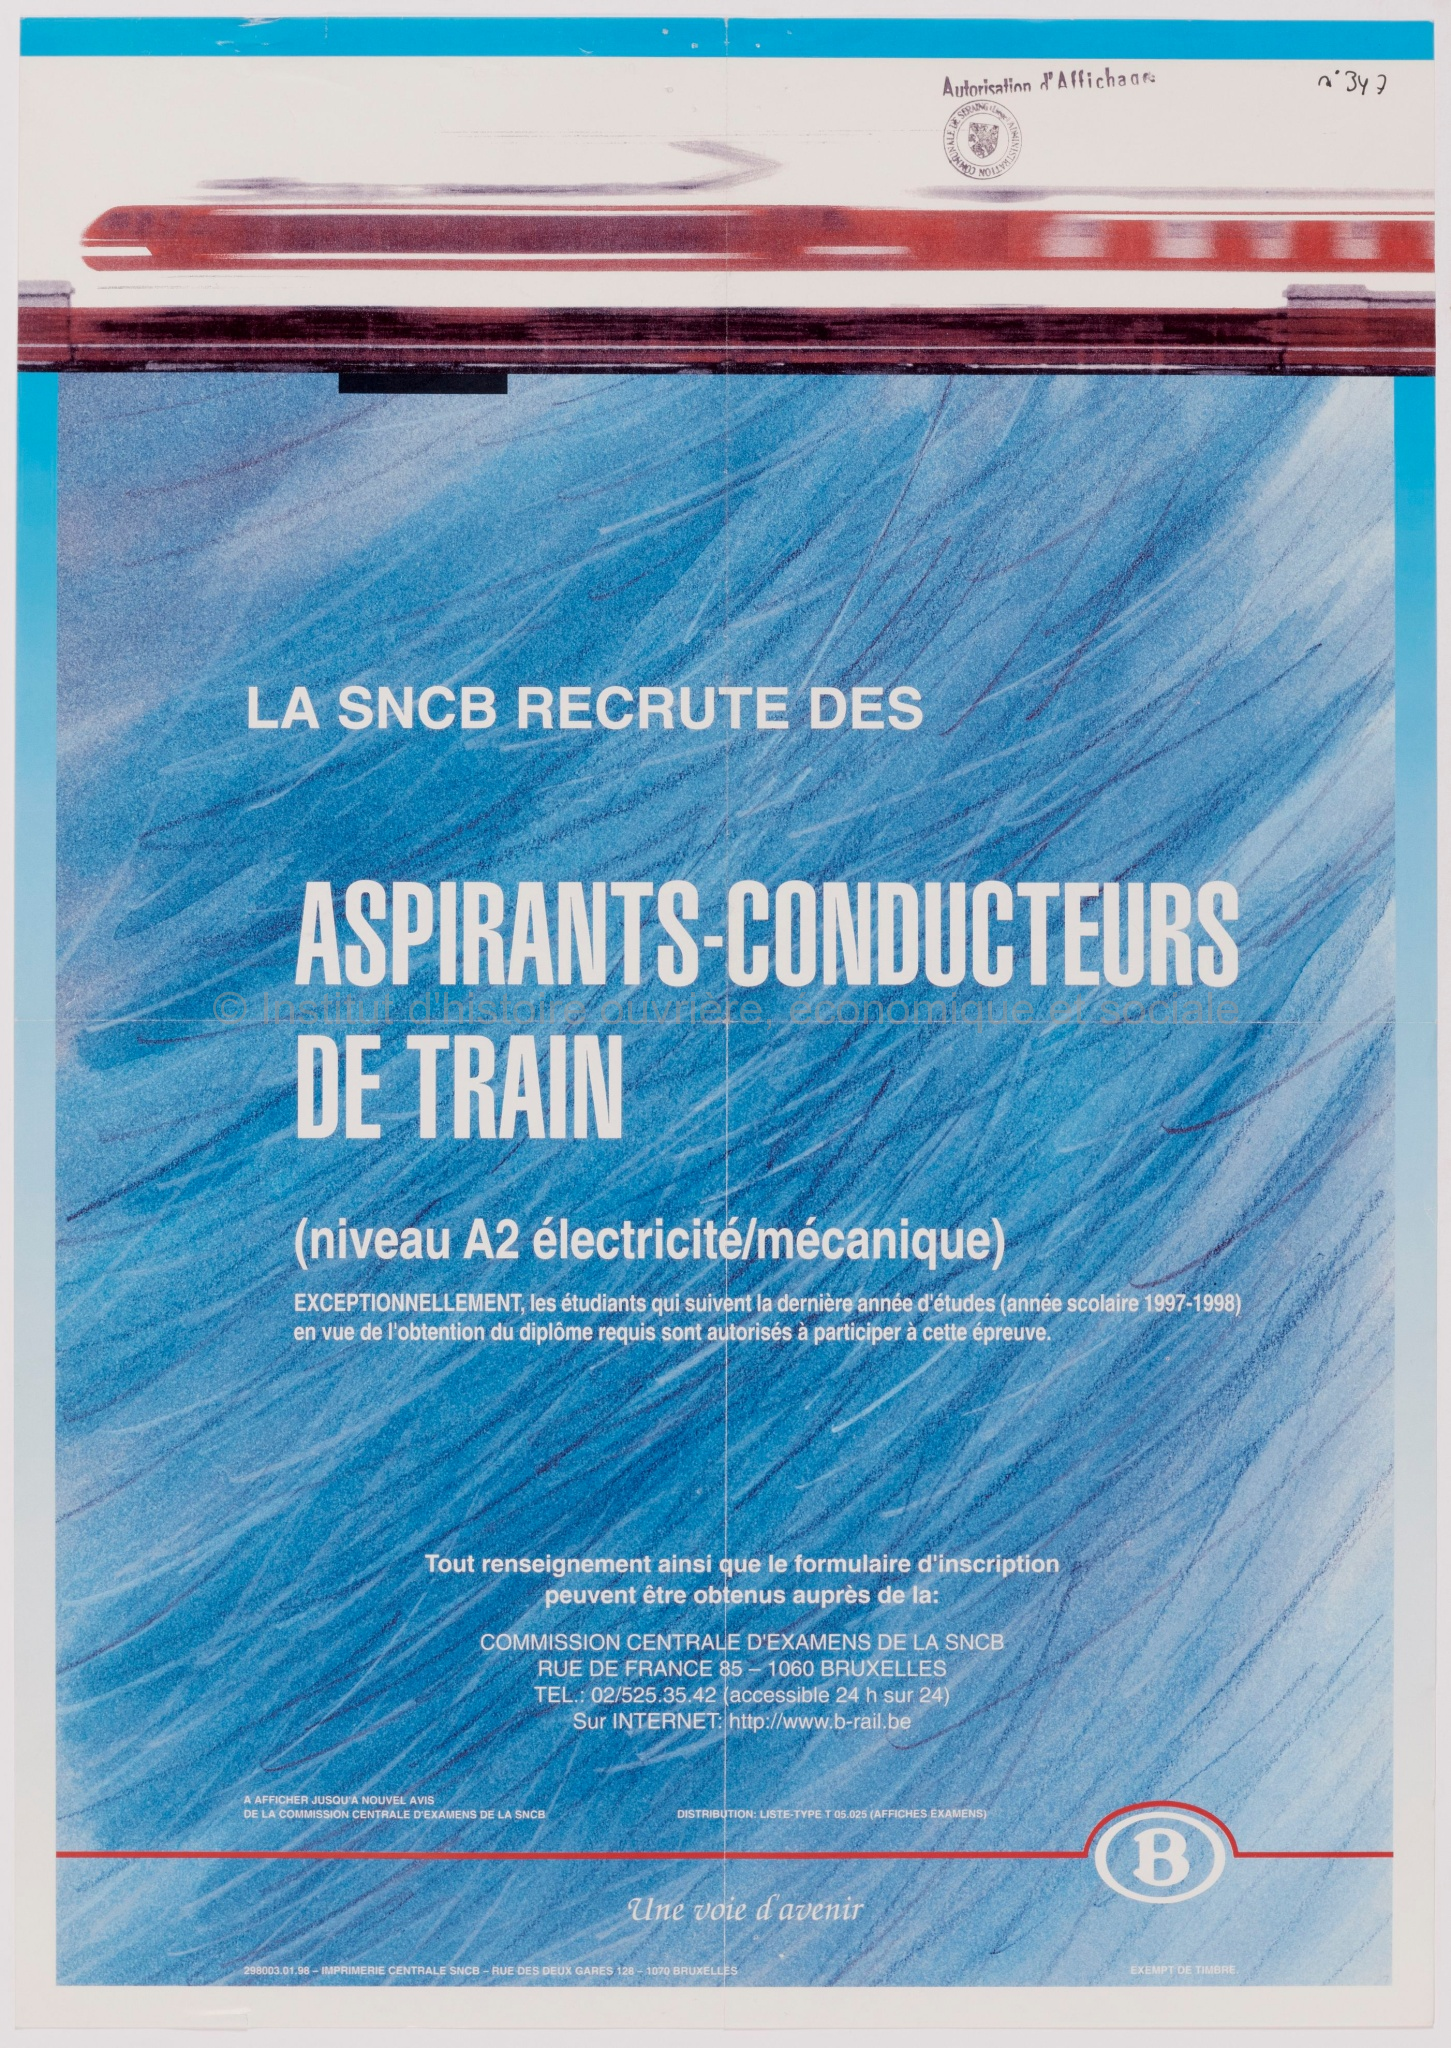 La SNCB recrute des aspirants-conducteurs de train (niveau A2 électricité/mécanique)